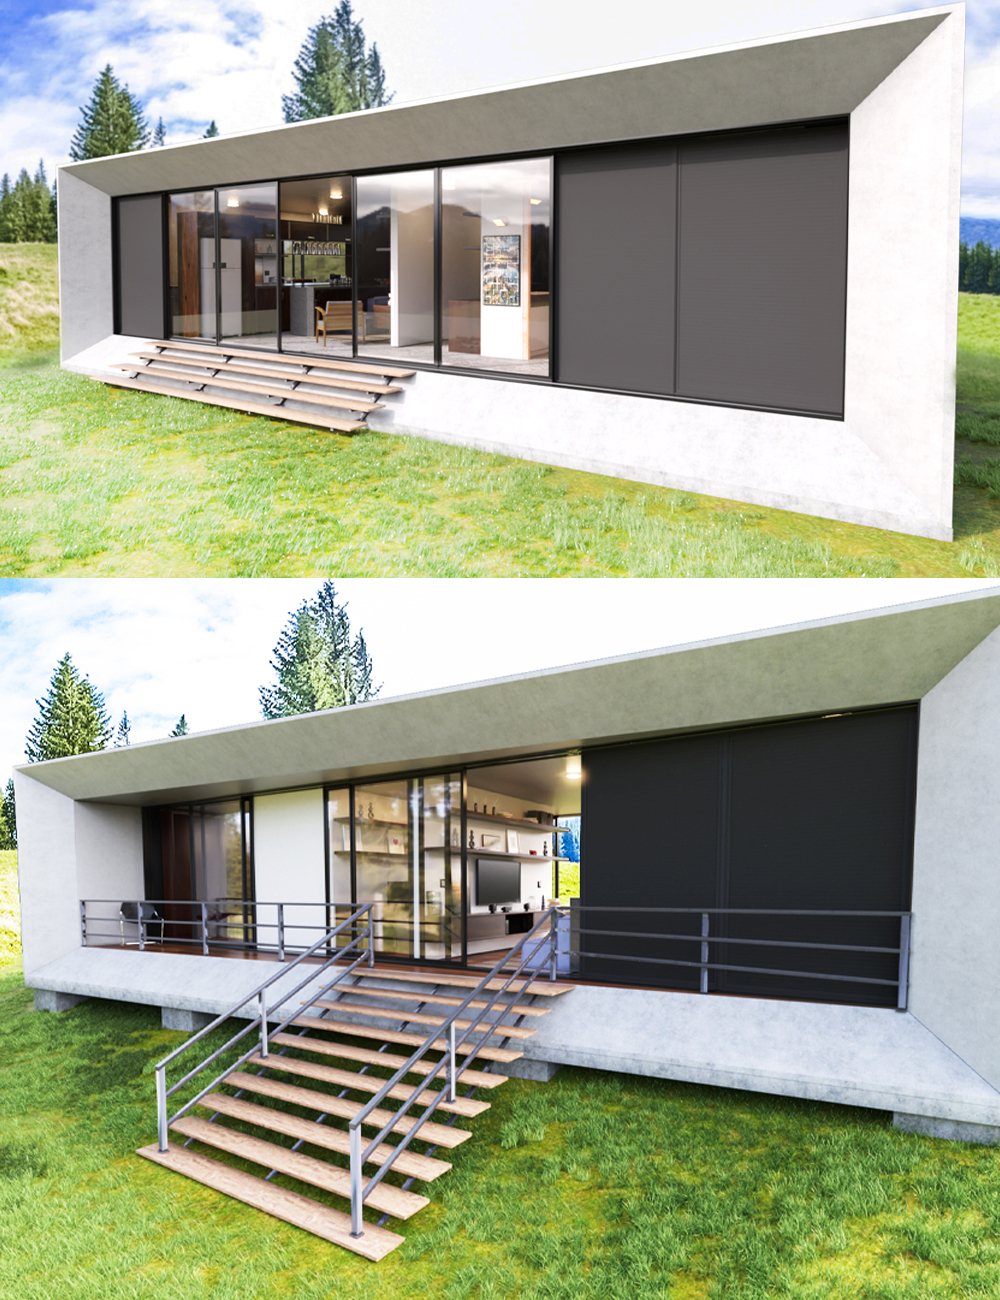 Trapezium House by: bituka3d, 3D Models by Daz 3D